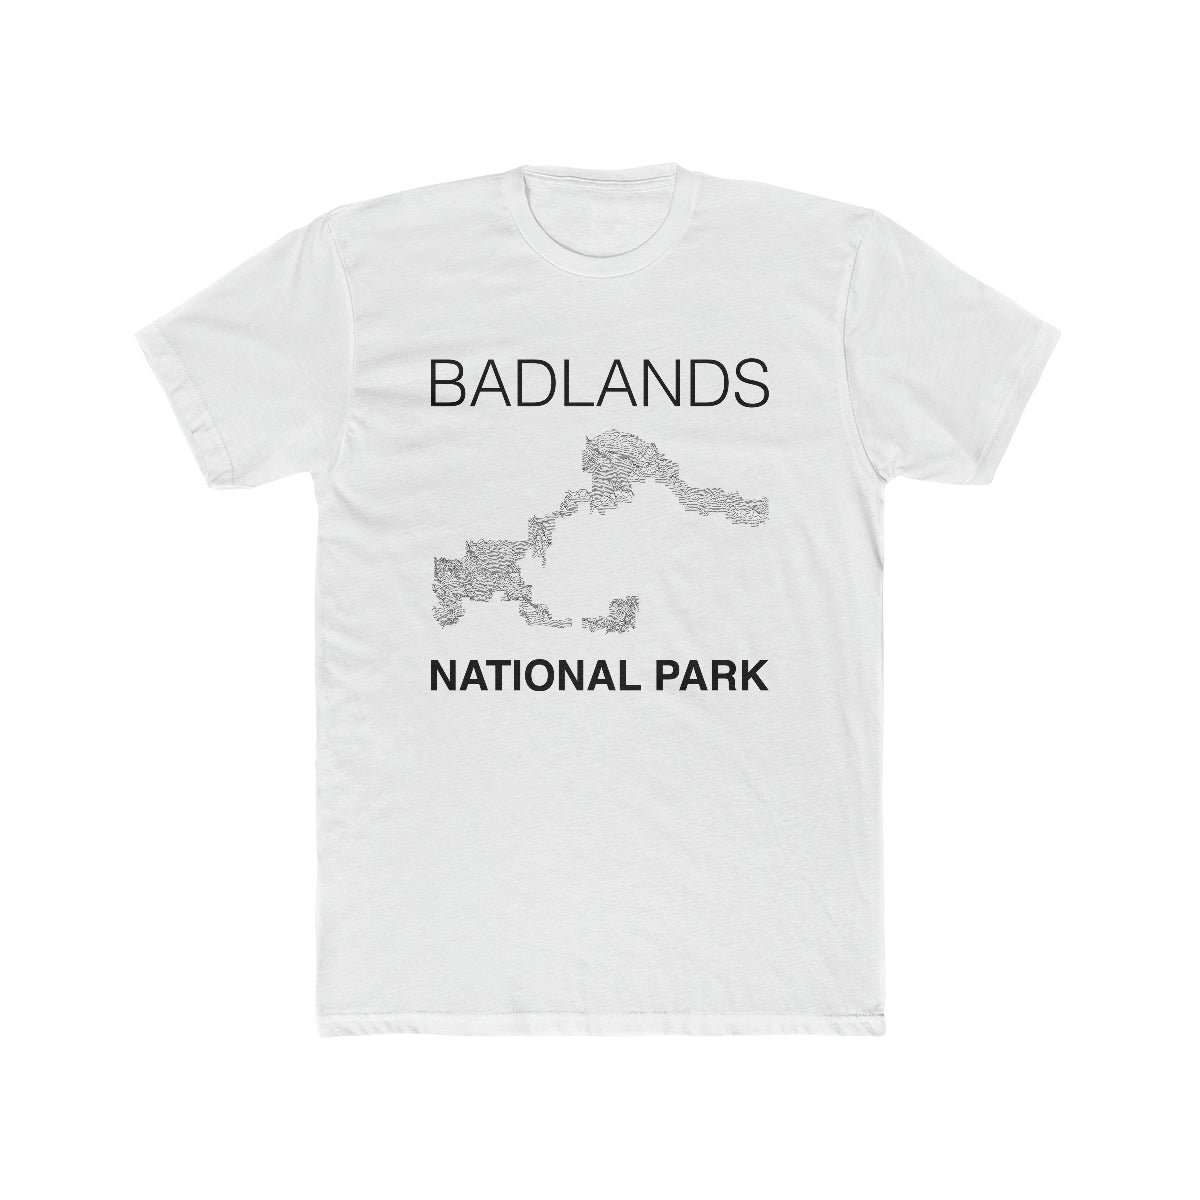 Badlands National Park T-Shirt Lines